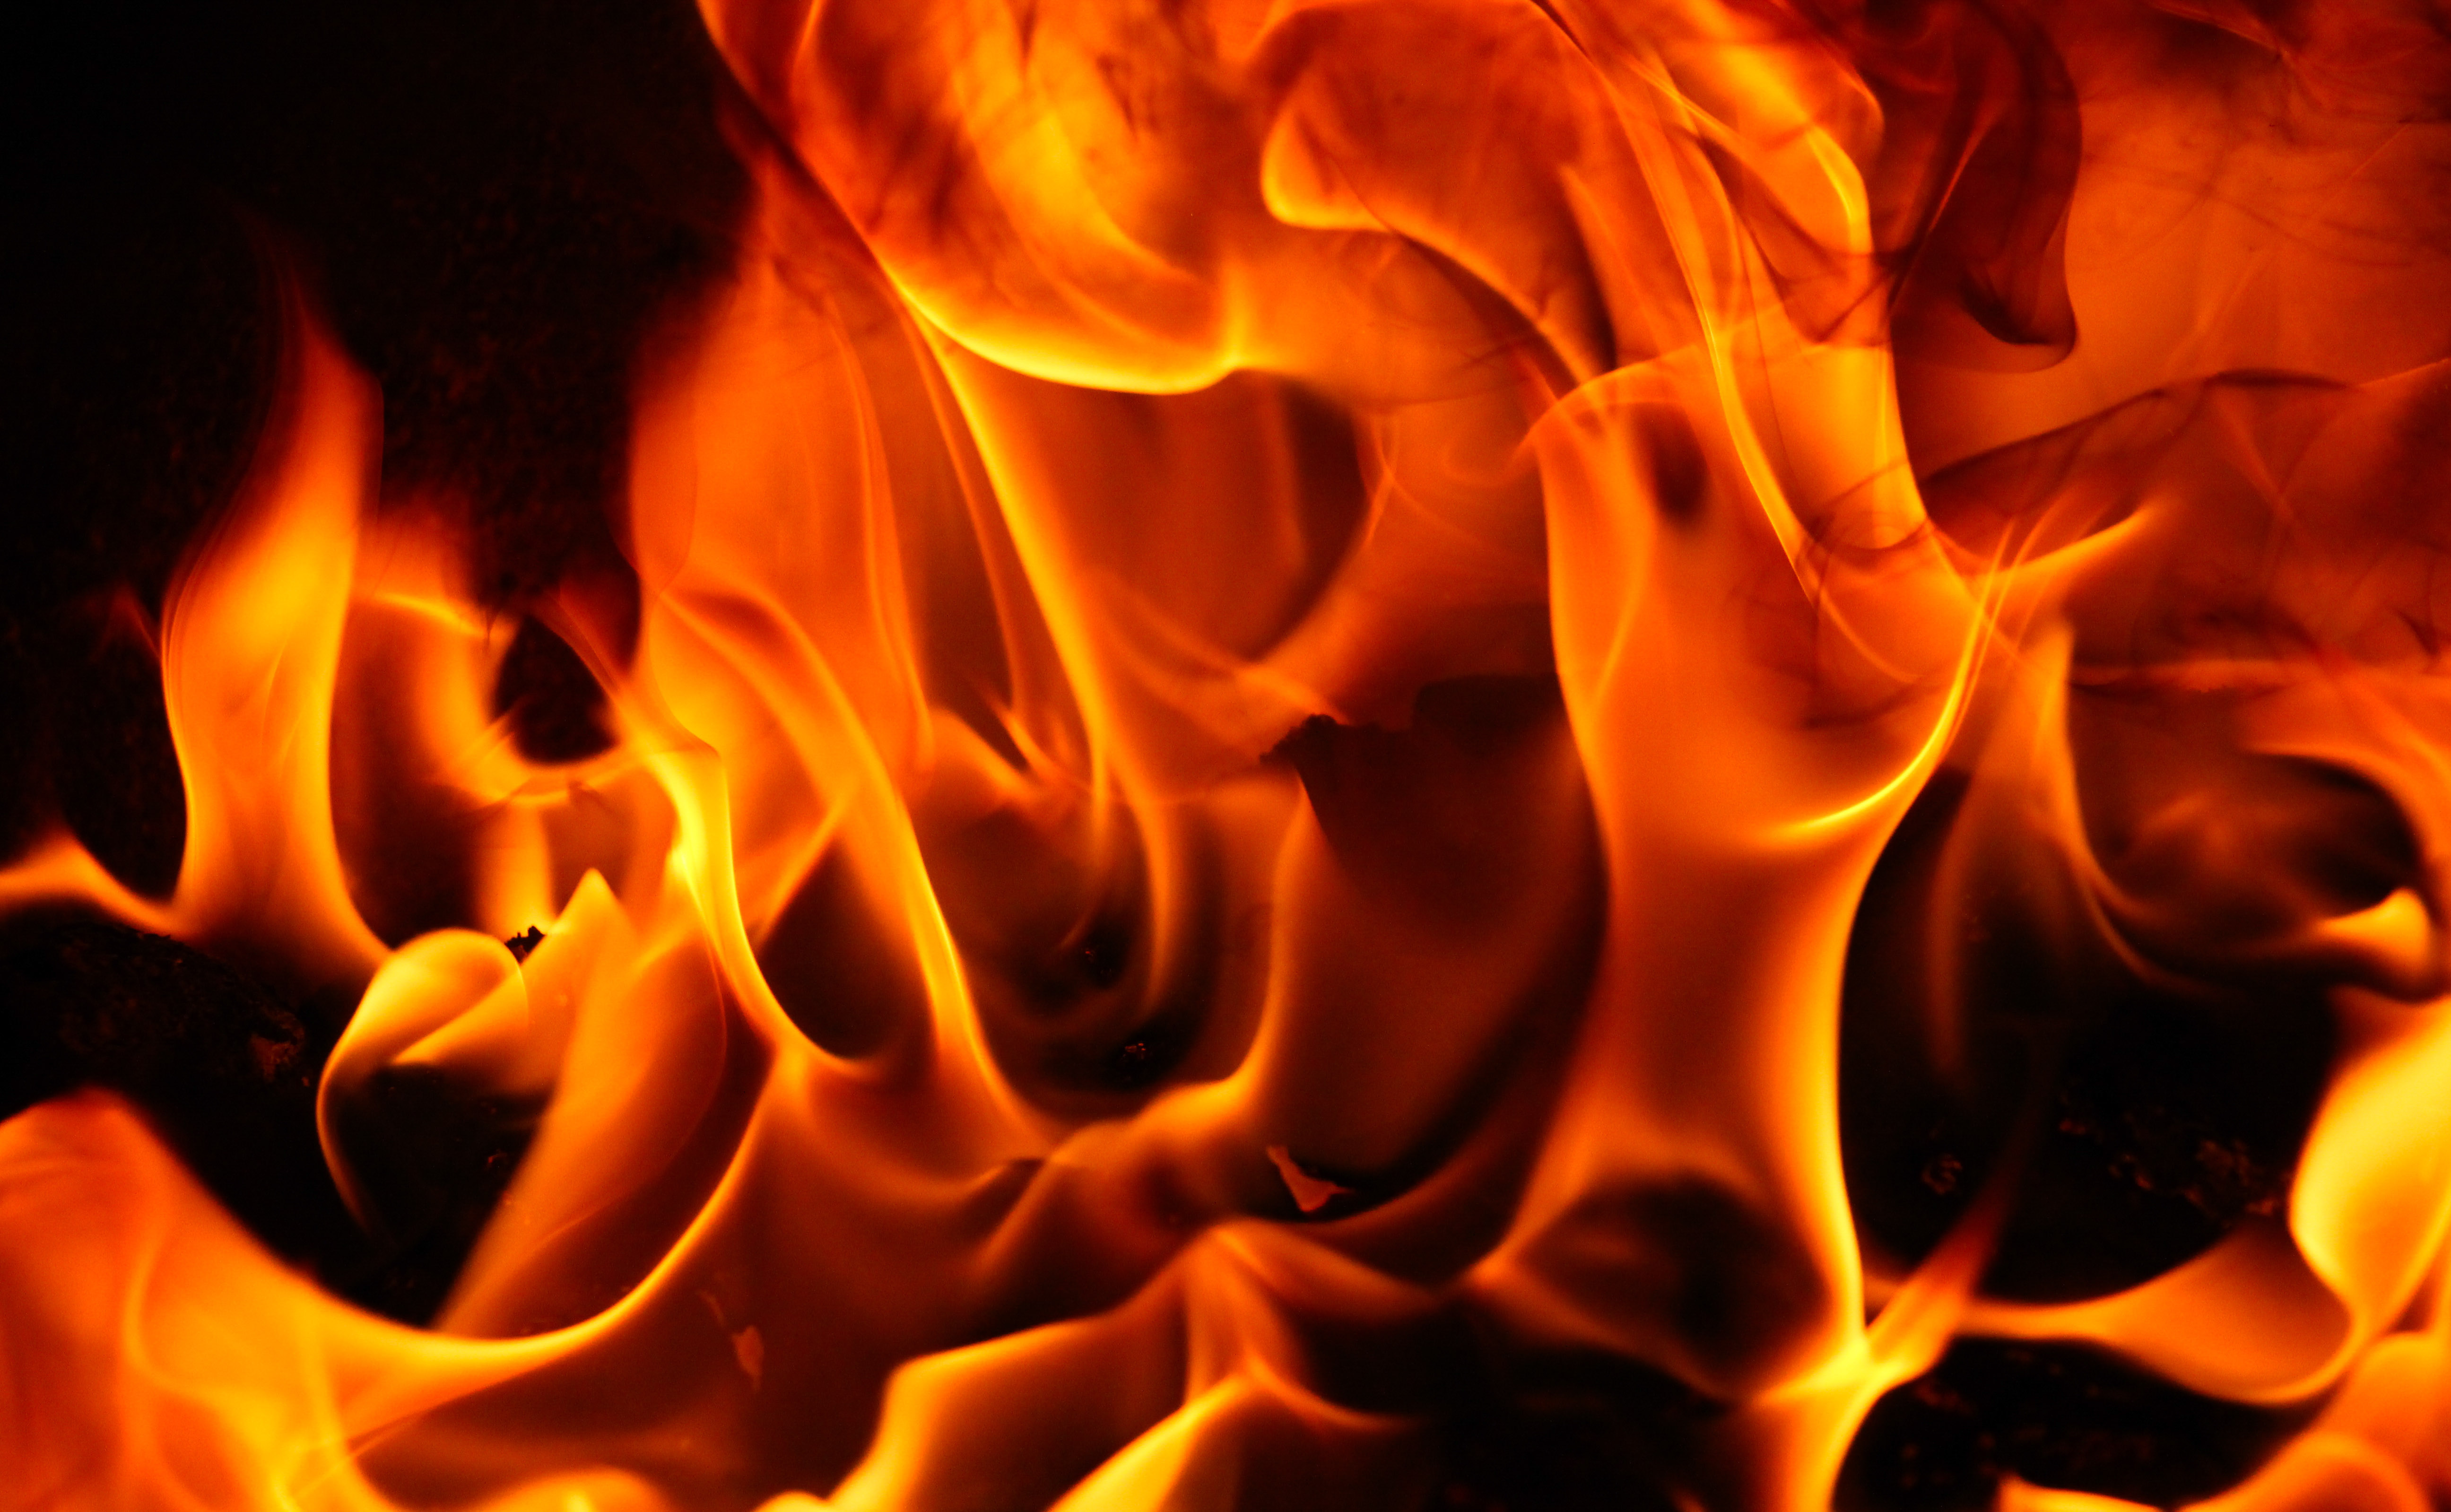  fire  texture red  hot burn blazing fiery element power 